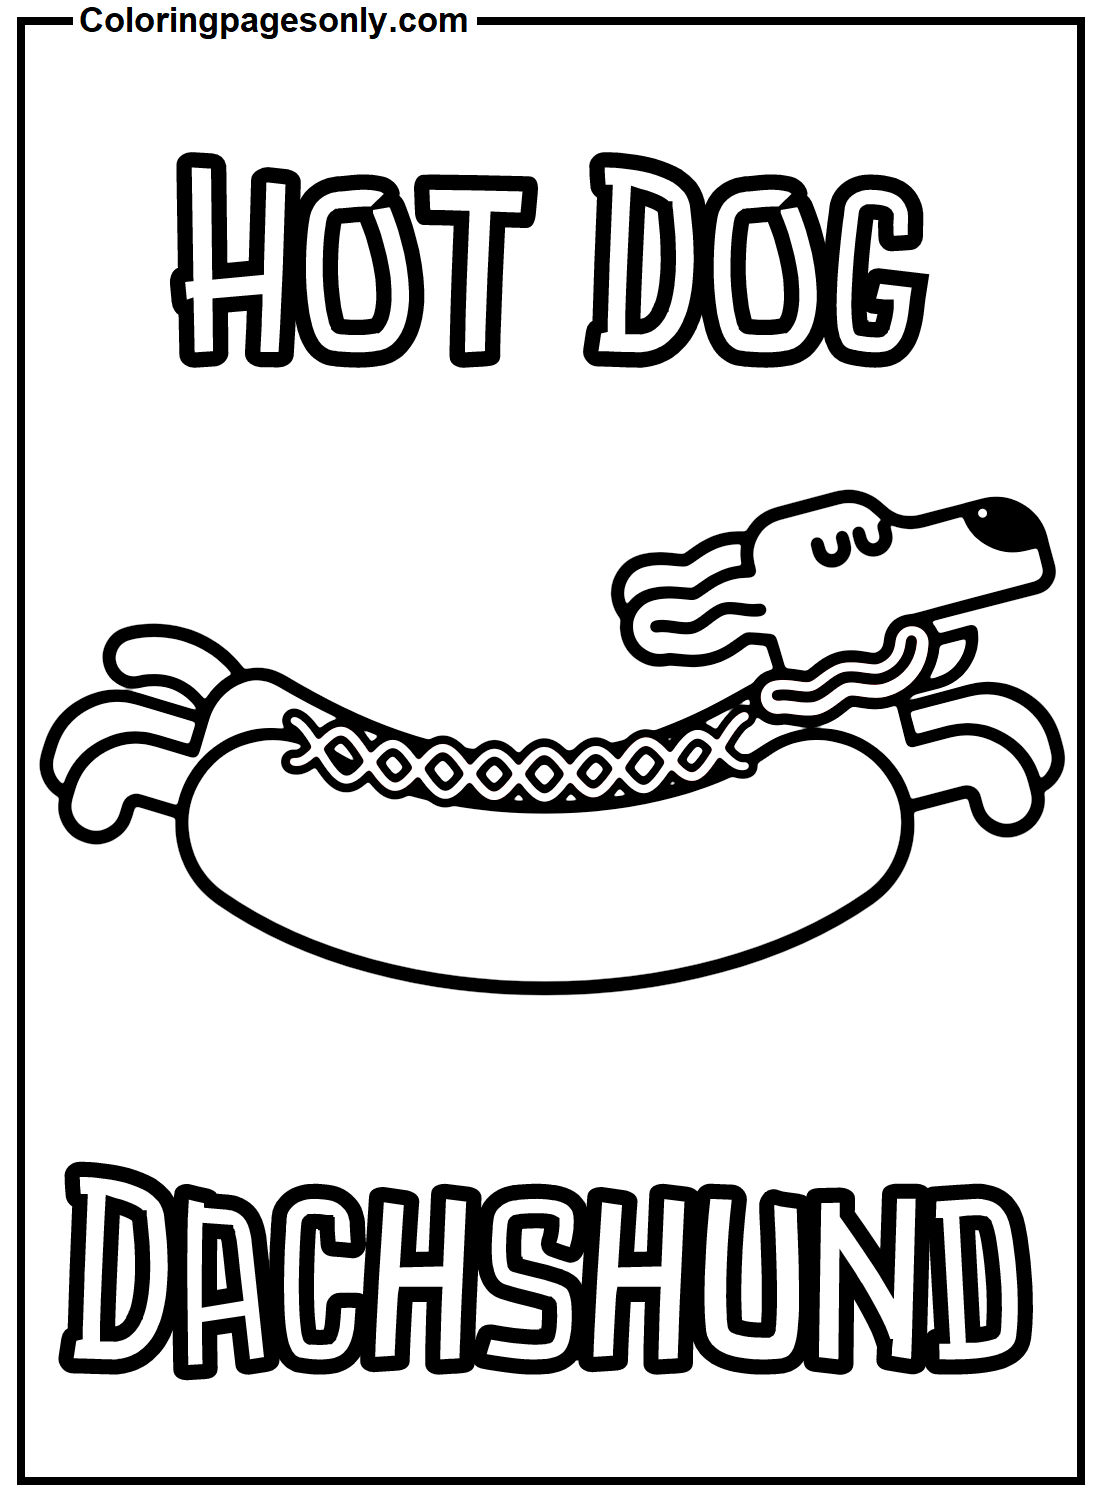 Hot Dog Dackel von Hot Dog